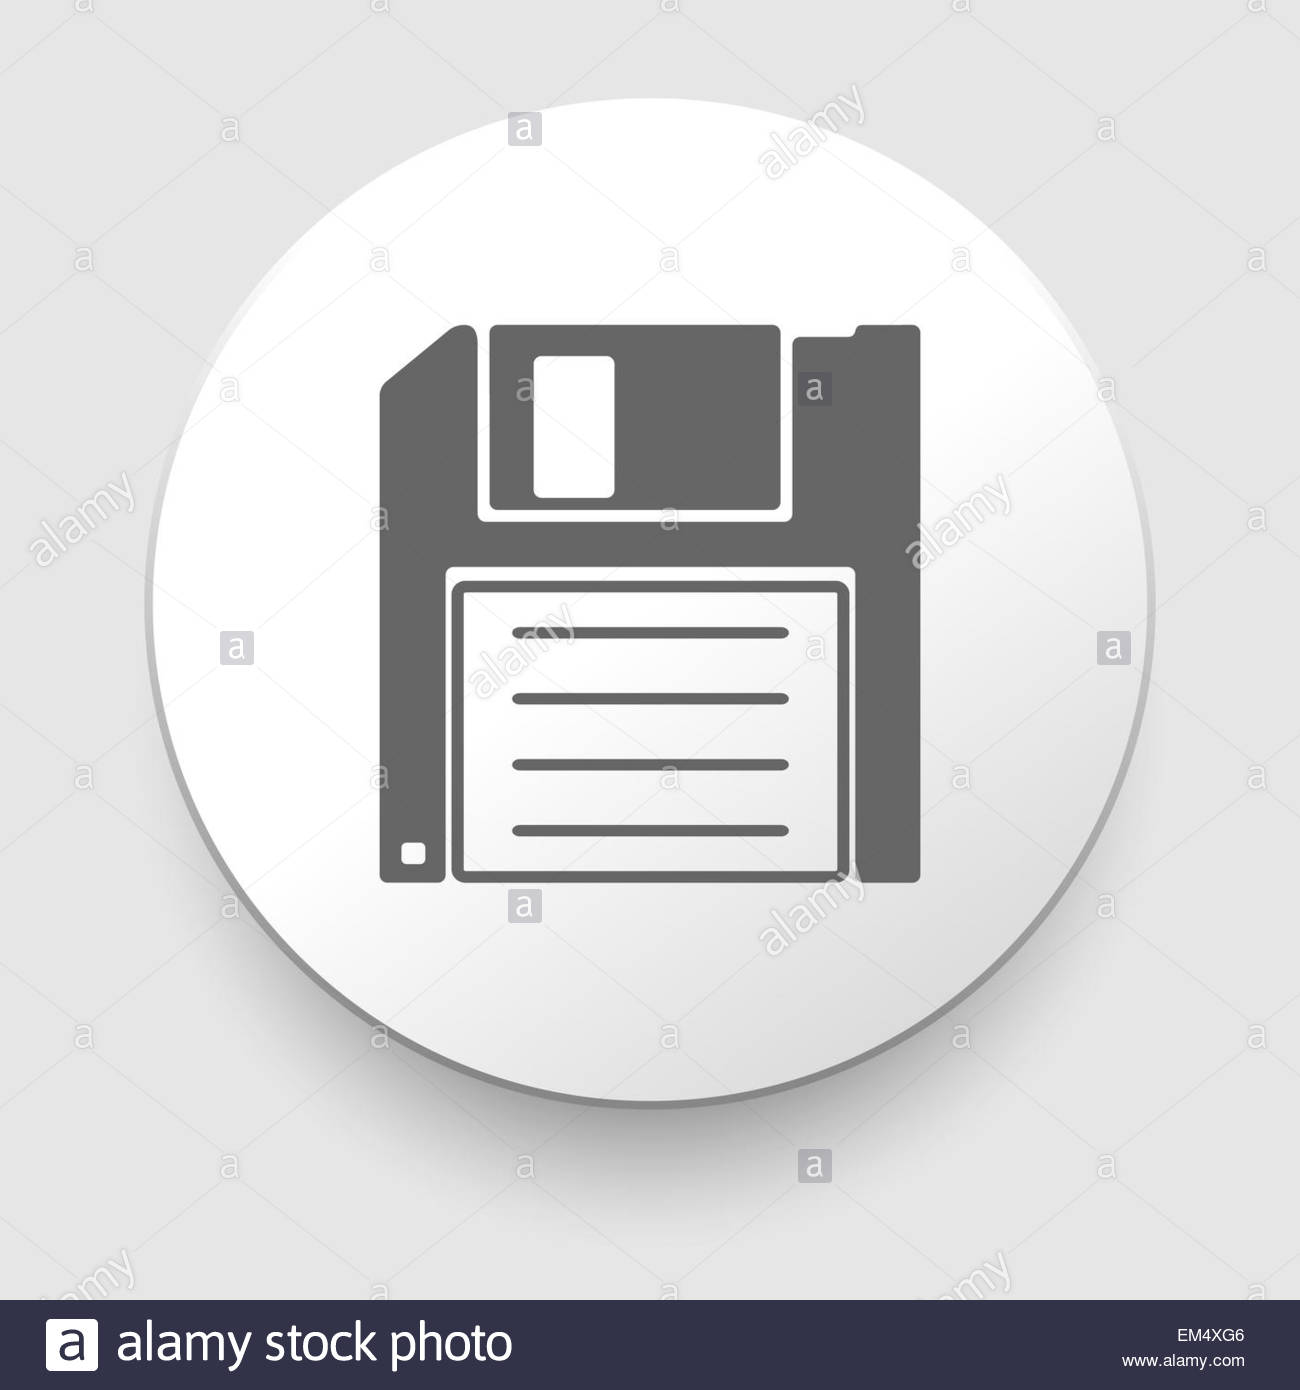 Floppy Disk icon | Myiconfinder